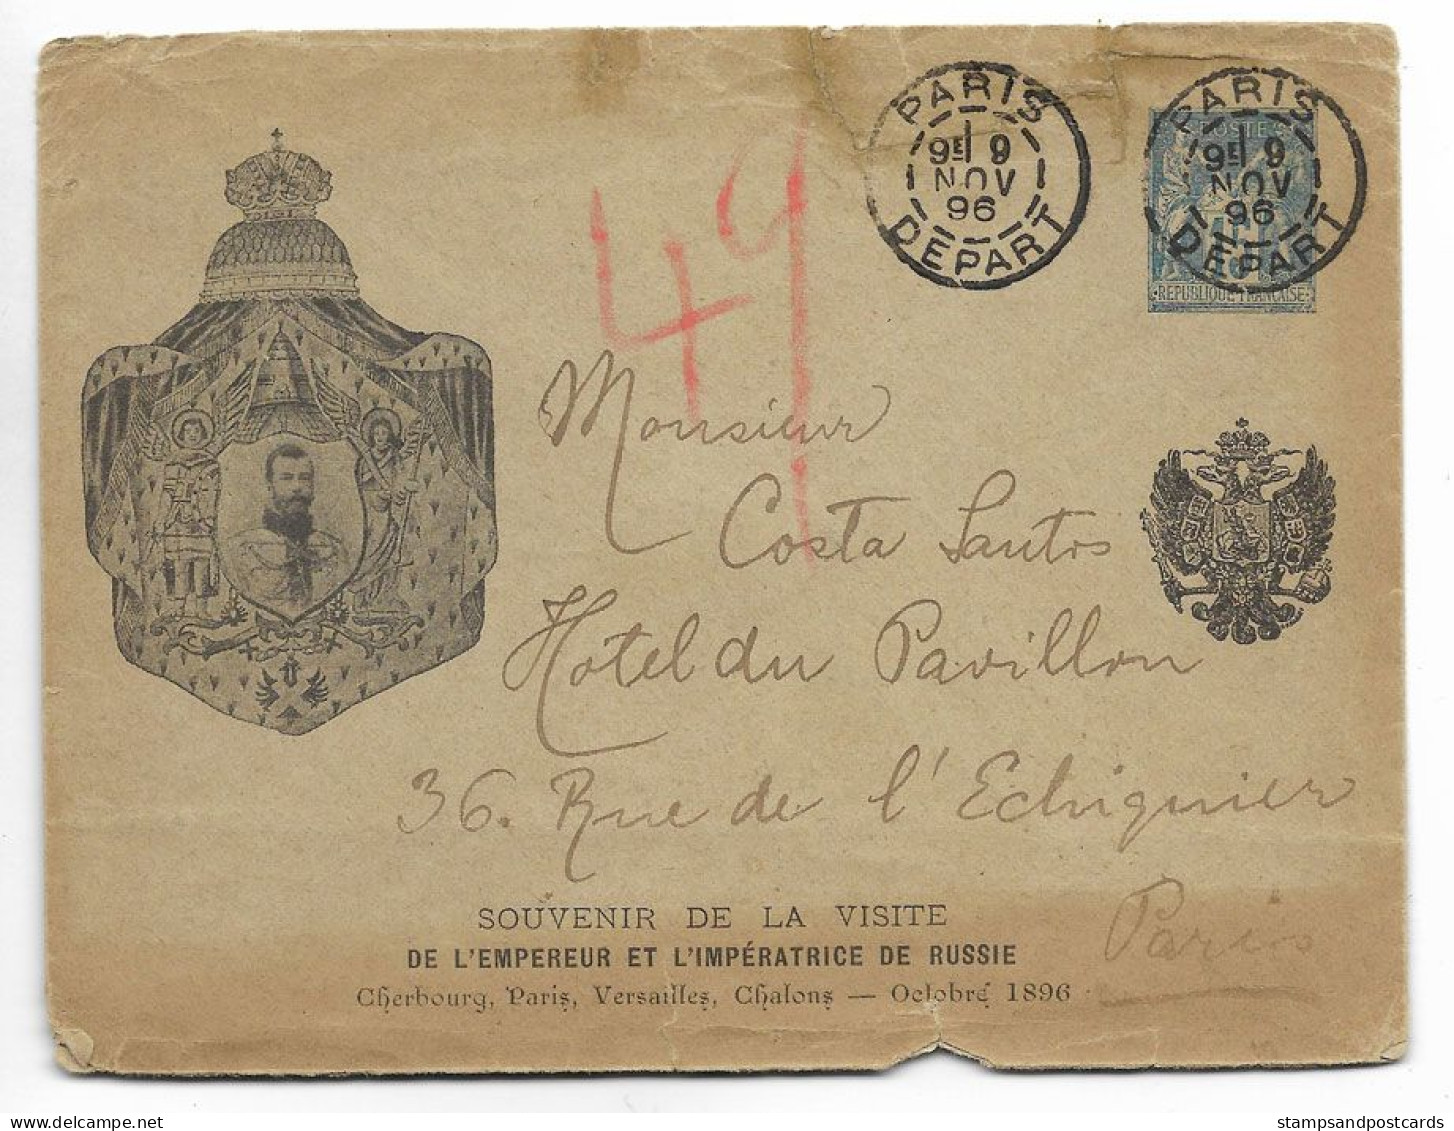 France Souvenir Visite Empereur Russie 1896 Rare Carte Entier Repiqué Voyagé Russia Czar Visit France Stationery Cover - Cartes-lettres